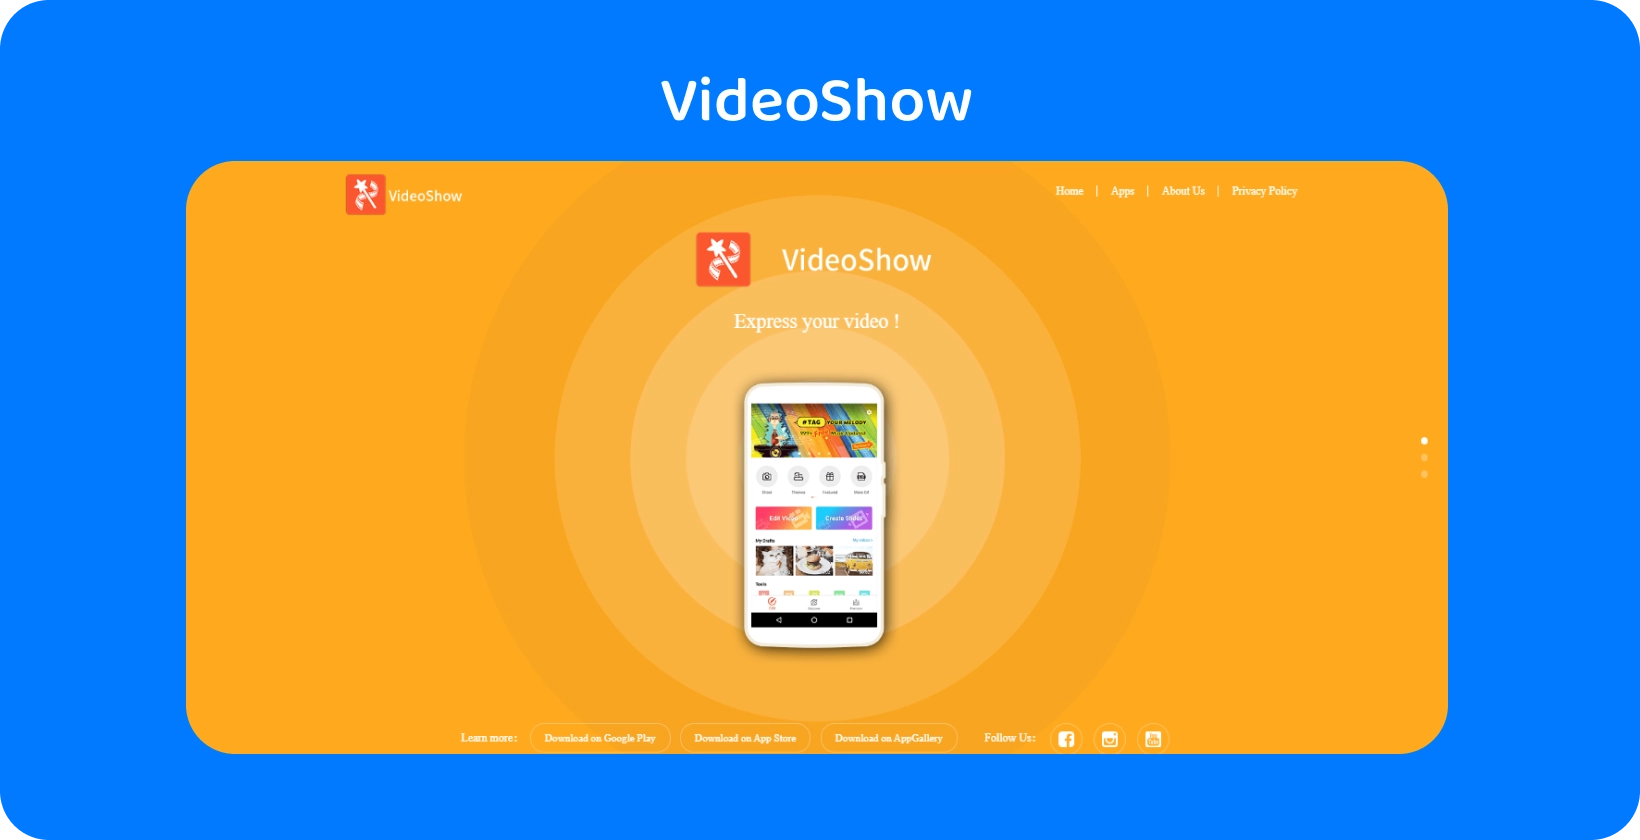 VideoShow sovelluksen käyttöliittymän näytölle ja tarjoaa helppoja videonmuokkaustyökaluja ja ominaisuuksia eloisalla oranssilla taustalla.